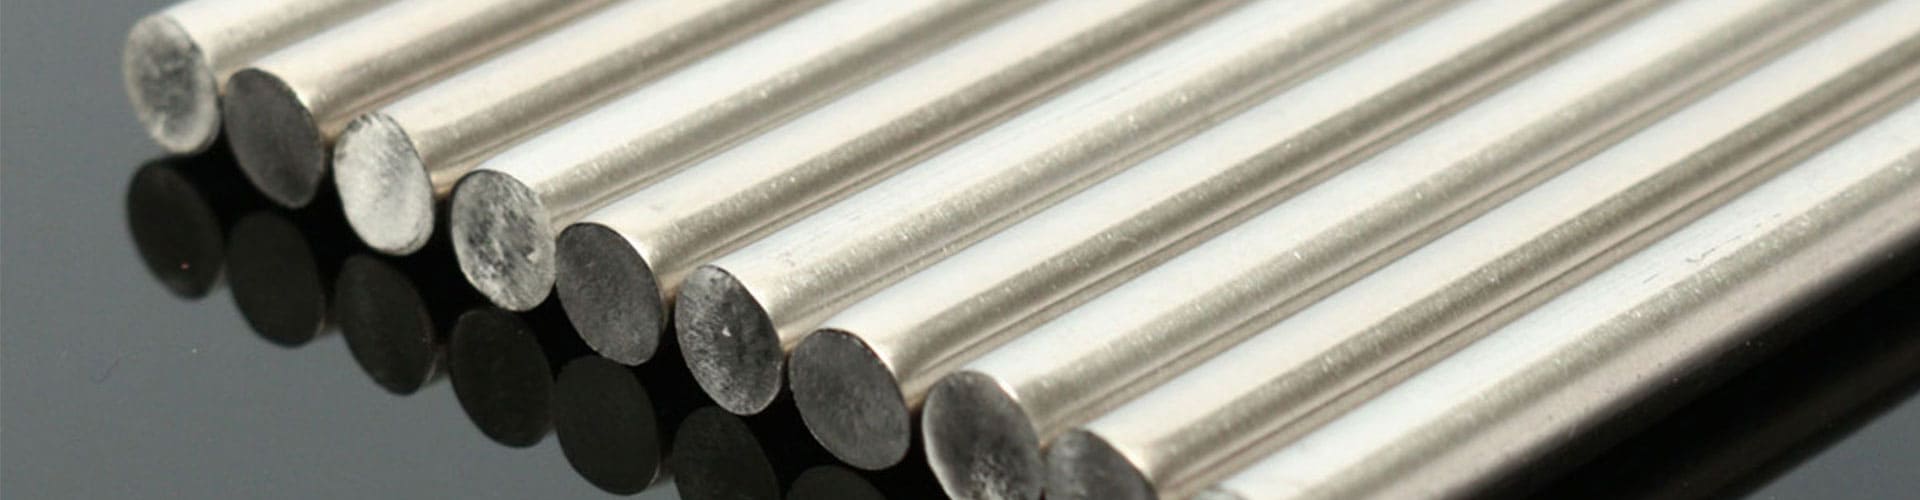 nickel-alloy-201-round-bars-rods-manufacturer-exporter-supplier-in-turkey